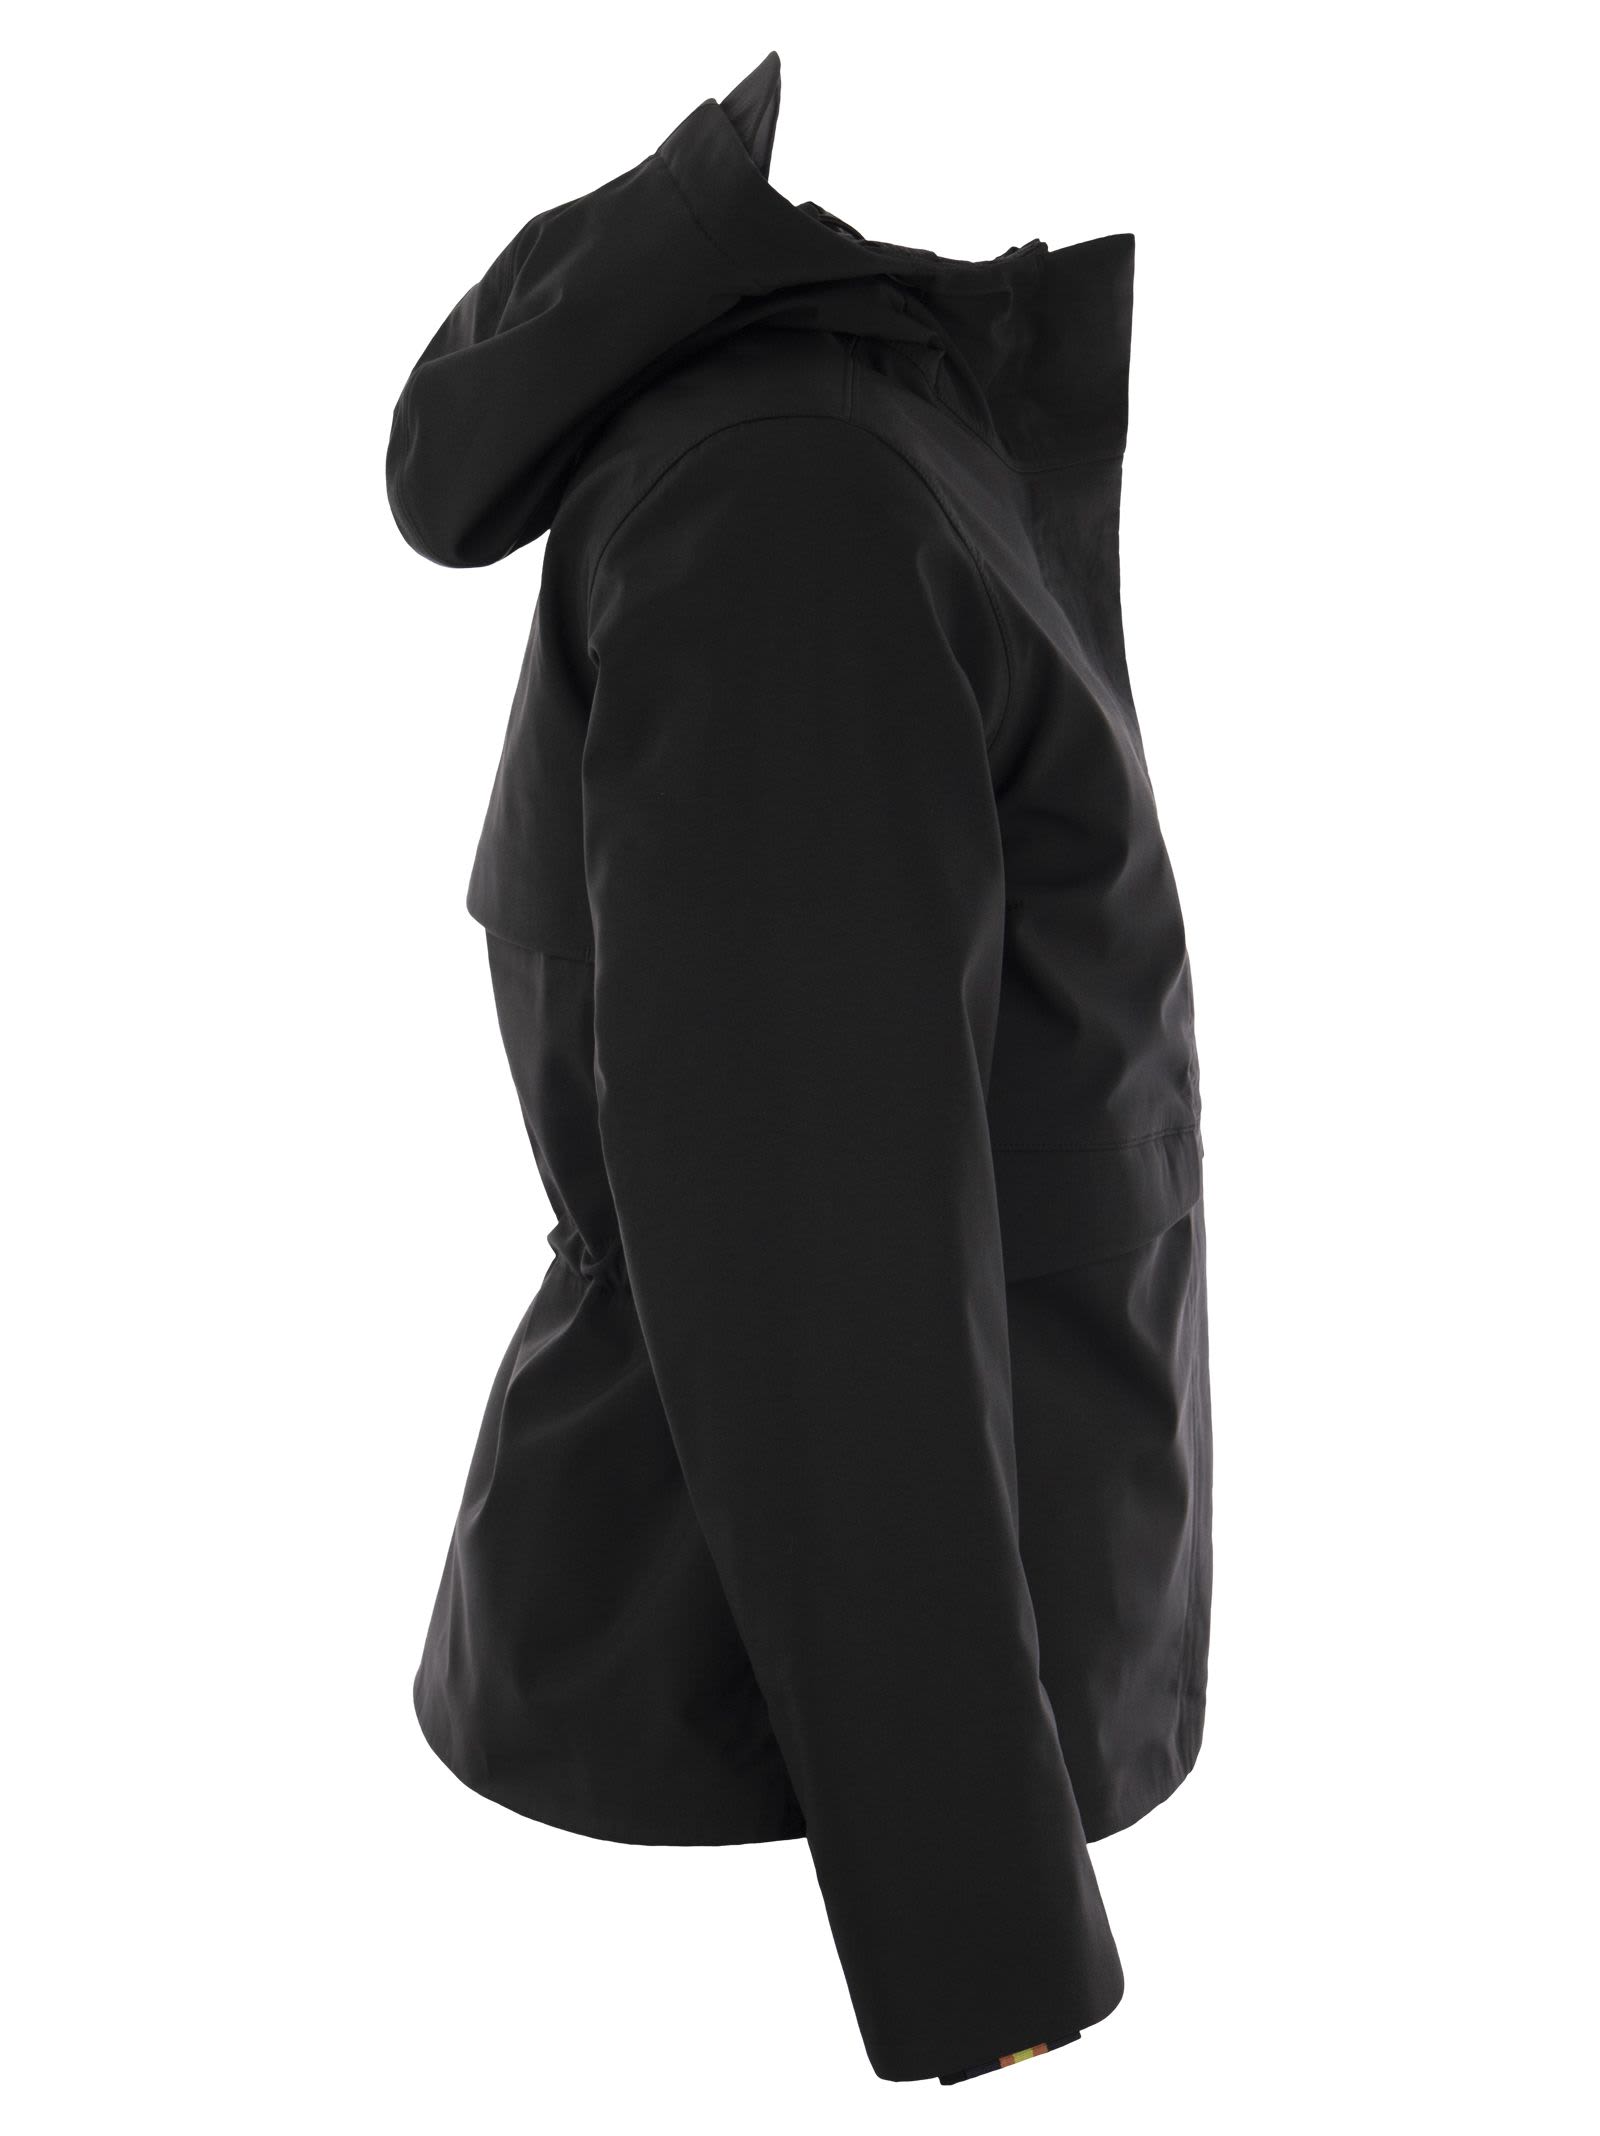 Shop K-way Dorel Bonded - Hooded Jacket In Black